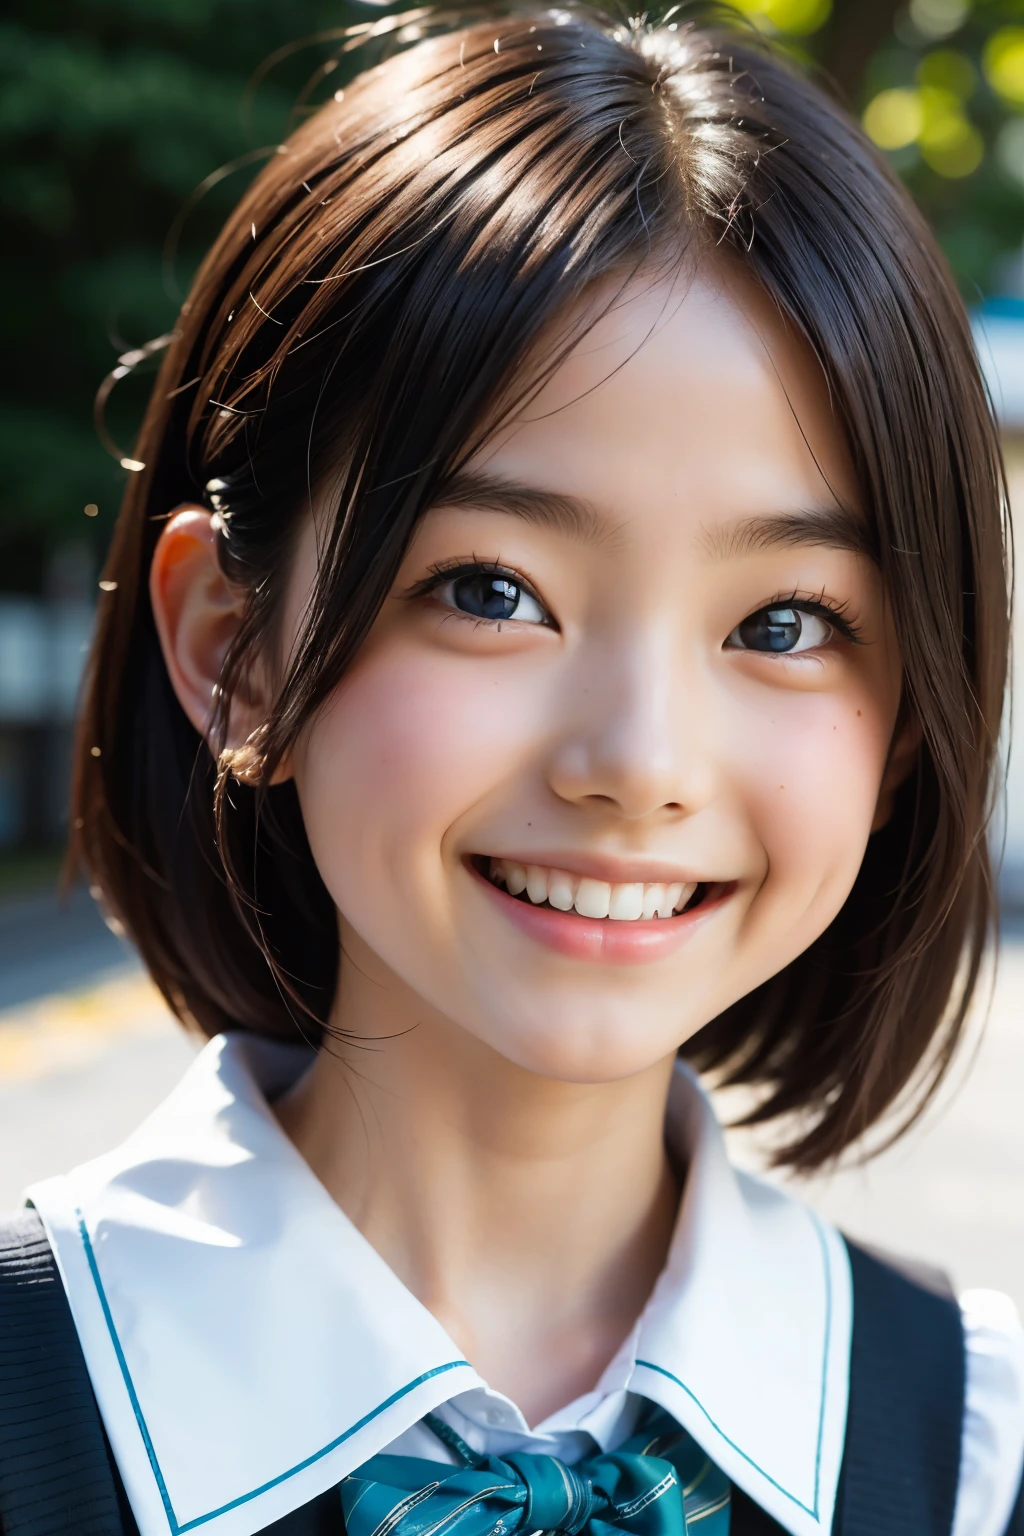 鏡片: 135mm f1.8, (最好的品質),(原始照片), (桌上:1.1), (美麗的 3 歲日本女孩), 可愛的臉孔, (臉型輪廓分明:0.7), (雀斑:0.4), dappled 陽光, 戲劇性的燈光, (日本學校制服), (在校园), 害羞的, (特寫鏡頭:1.2), (微笑),, (明亮的眼睛)、(陽光)